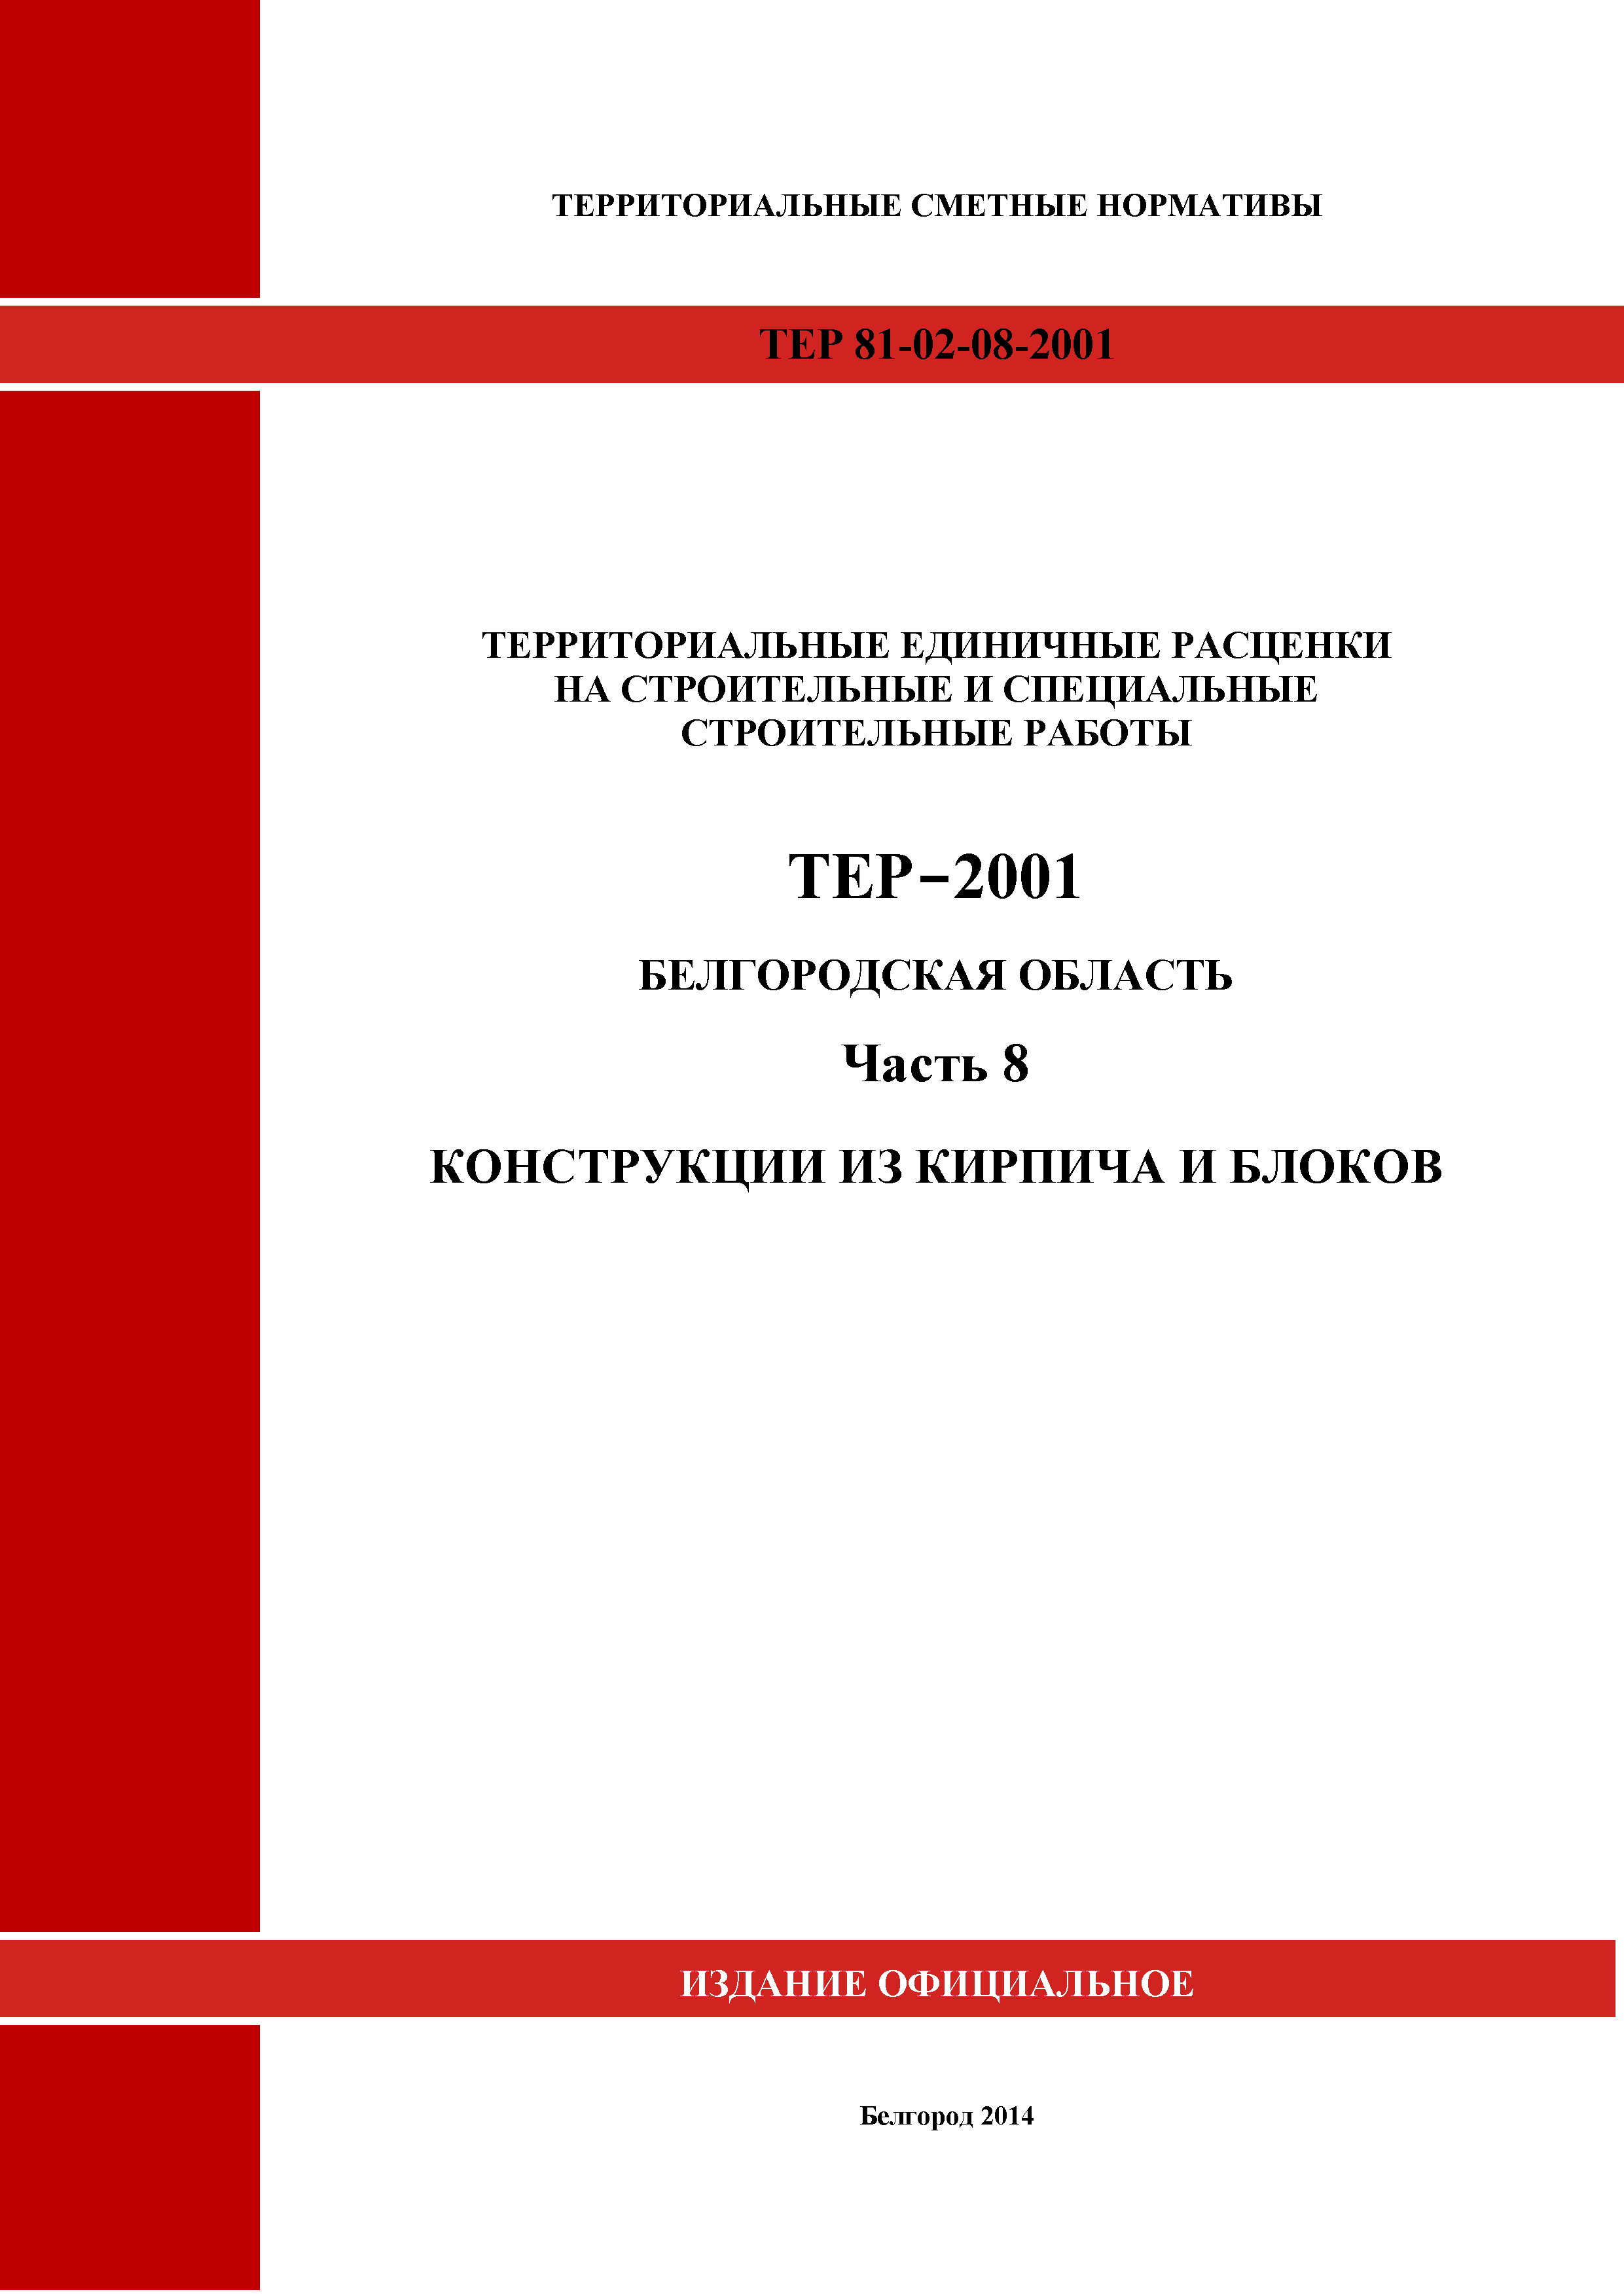 ТЕР Белгородская область 81-02-08-2001